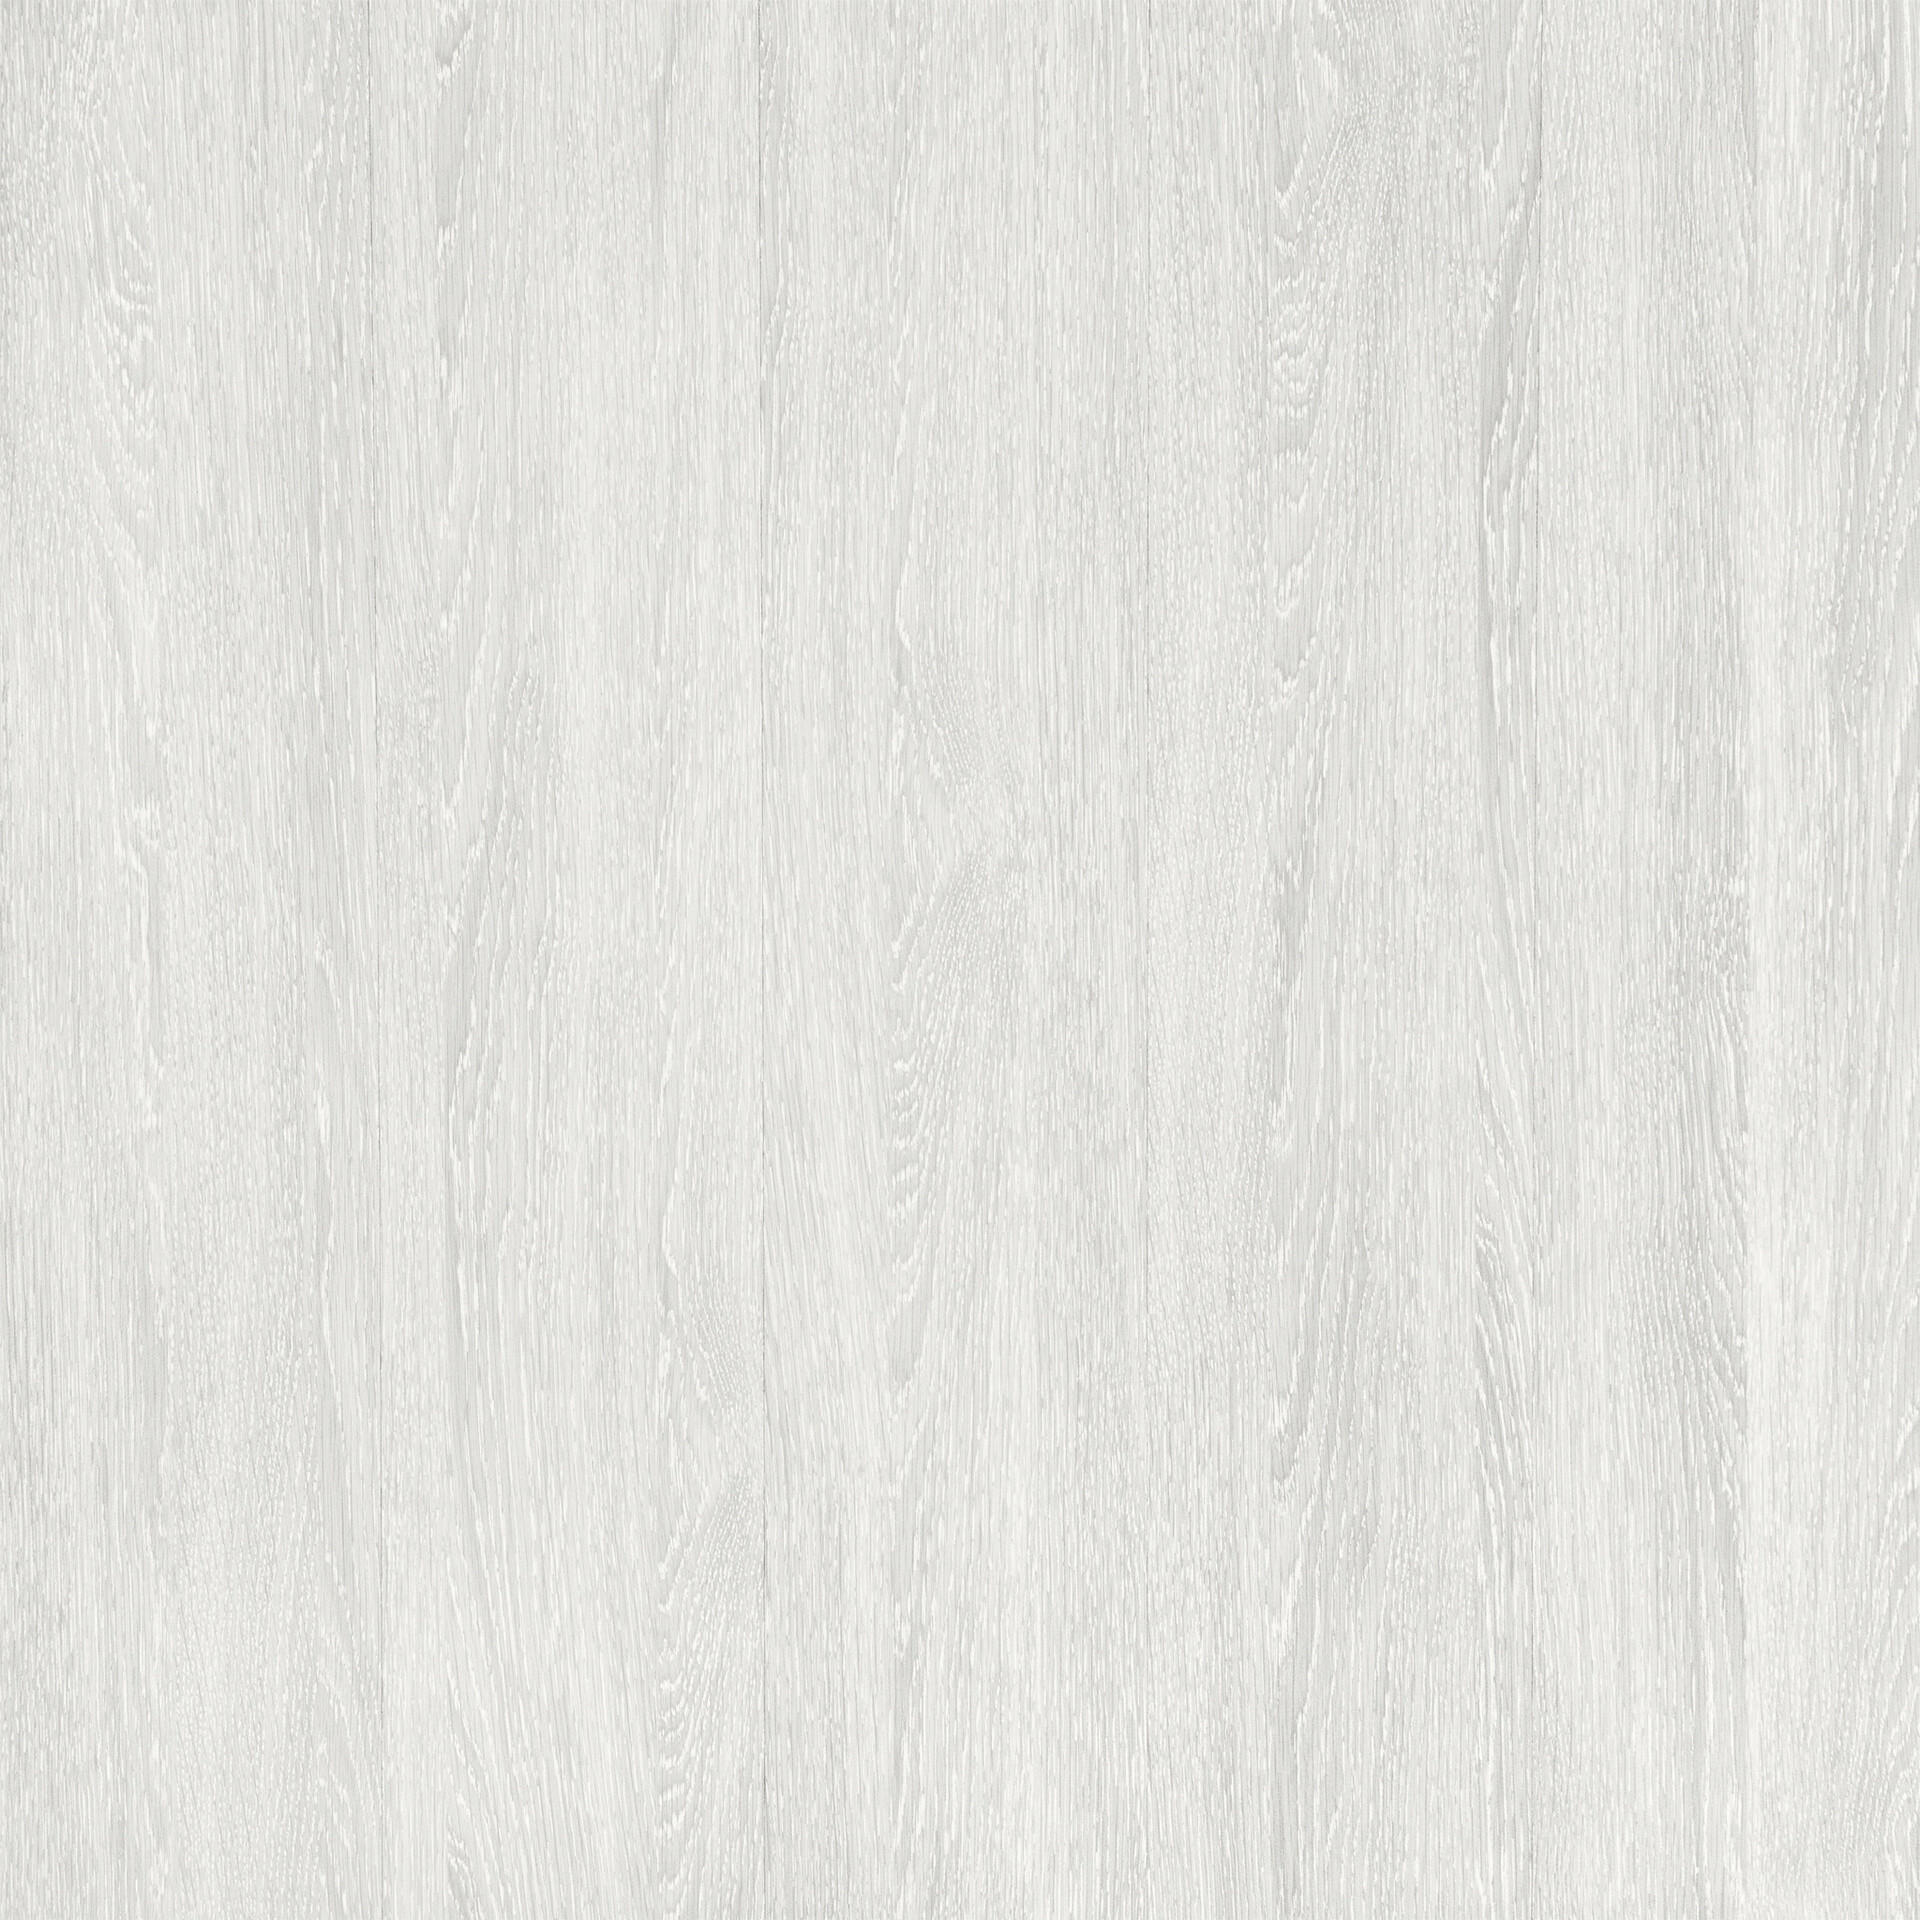 white wooden flooring texture